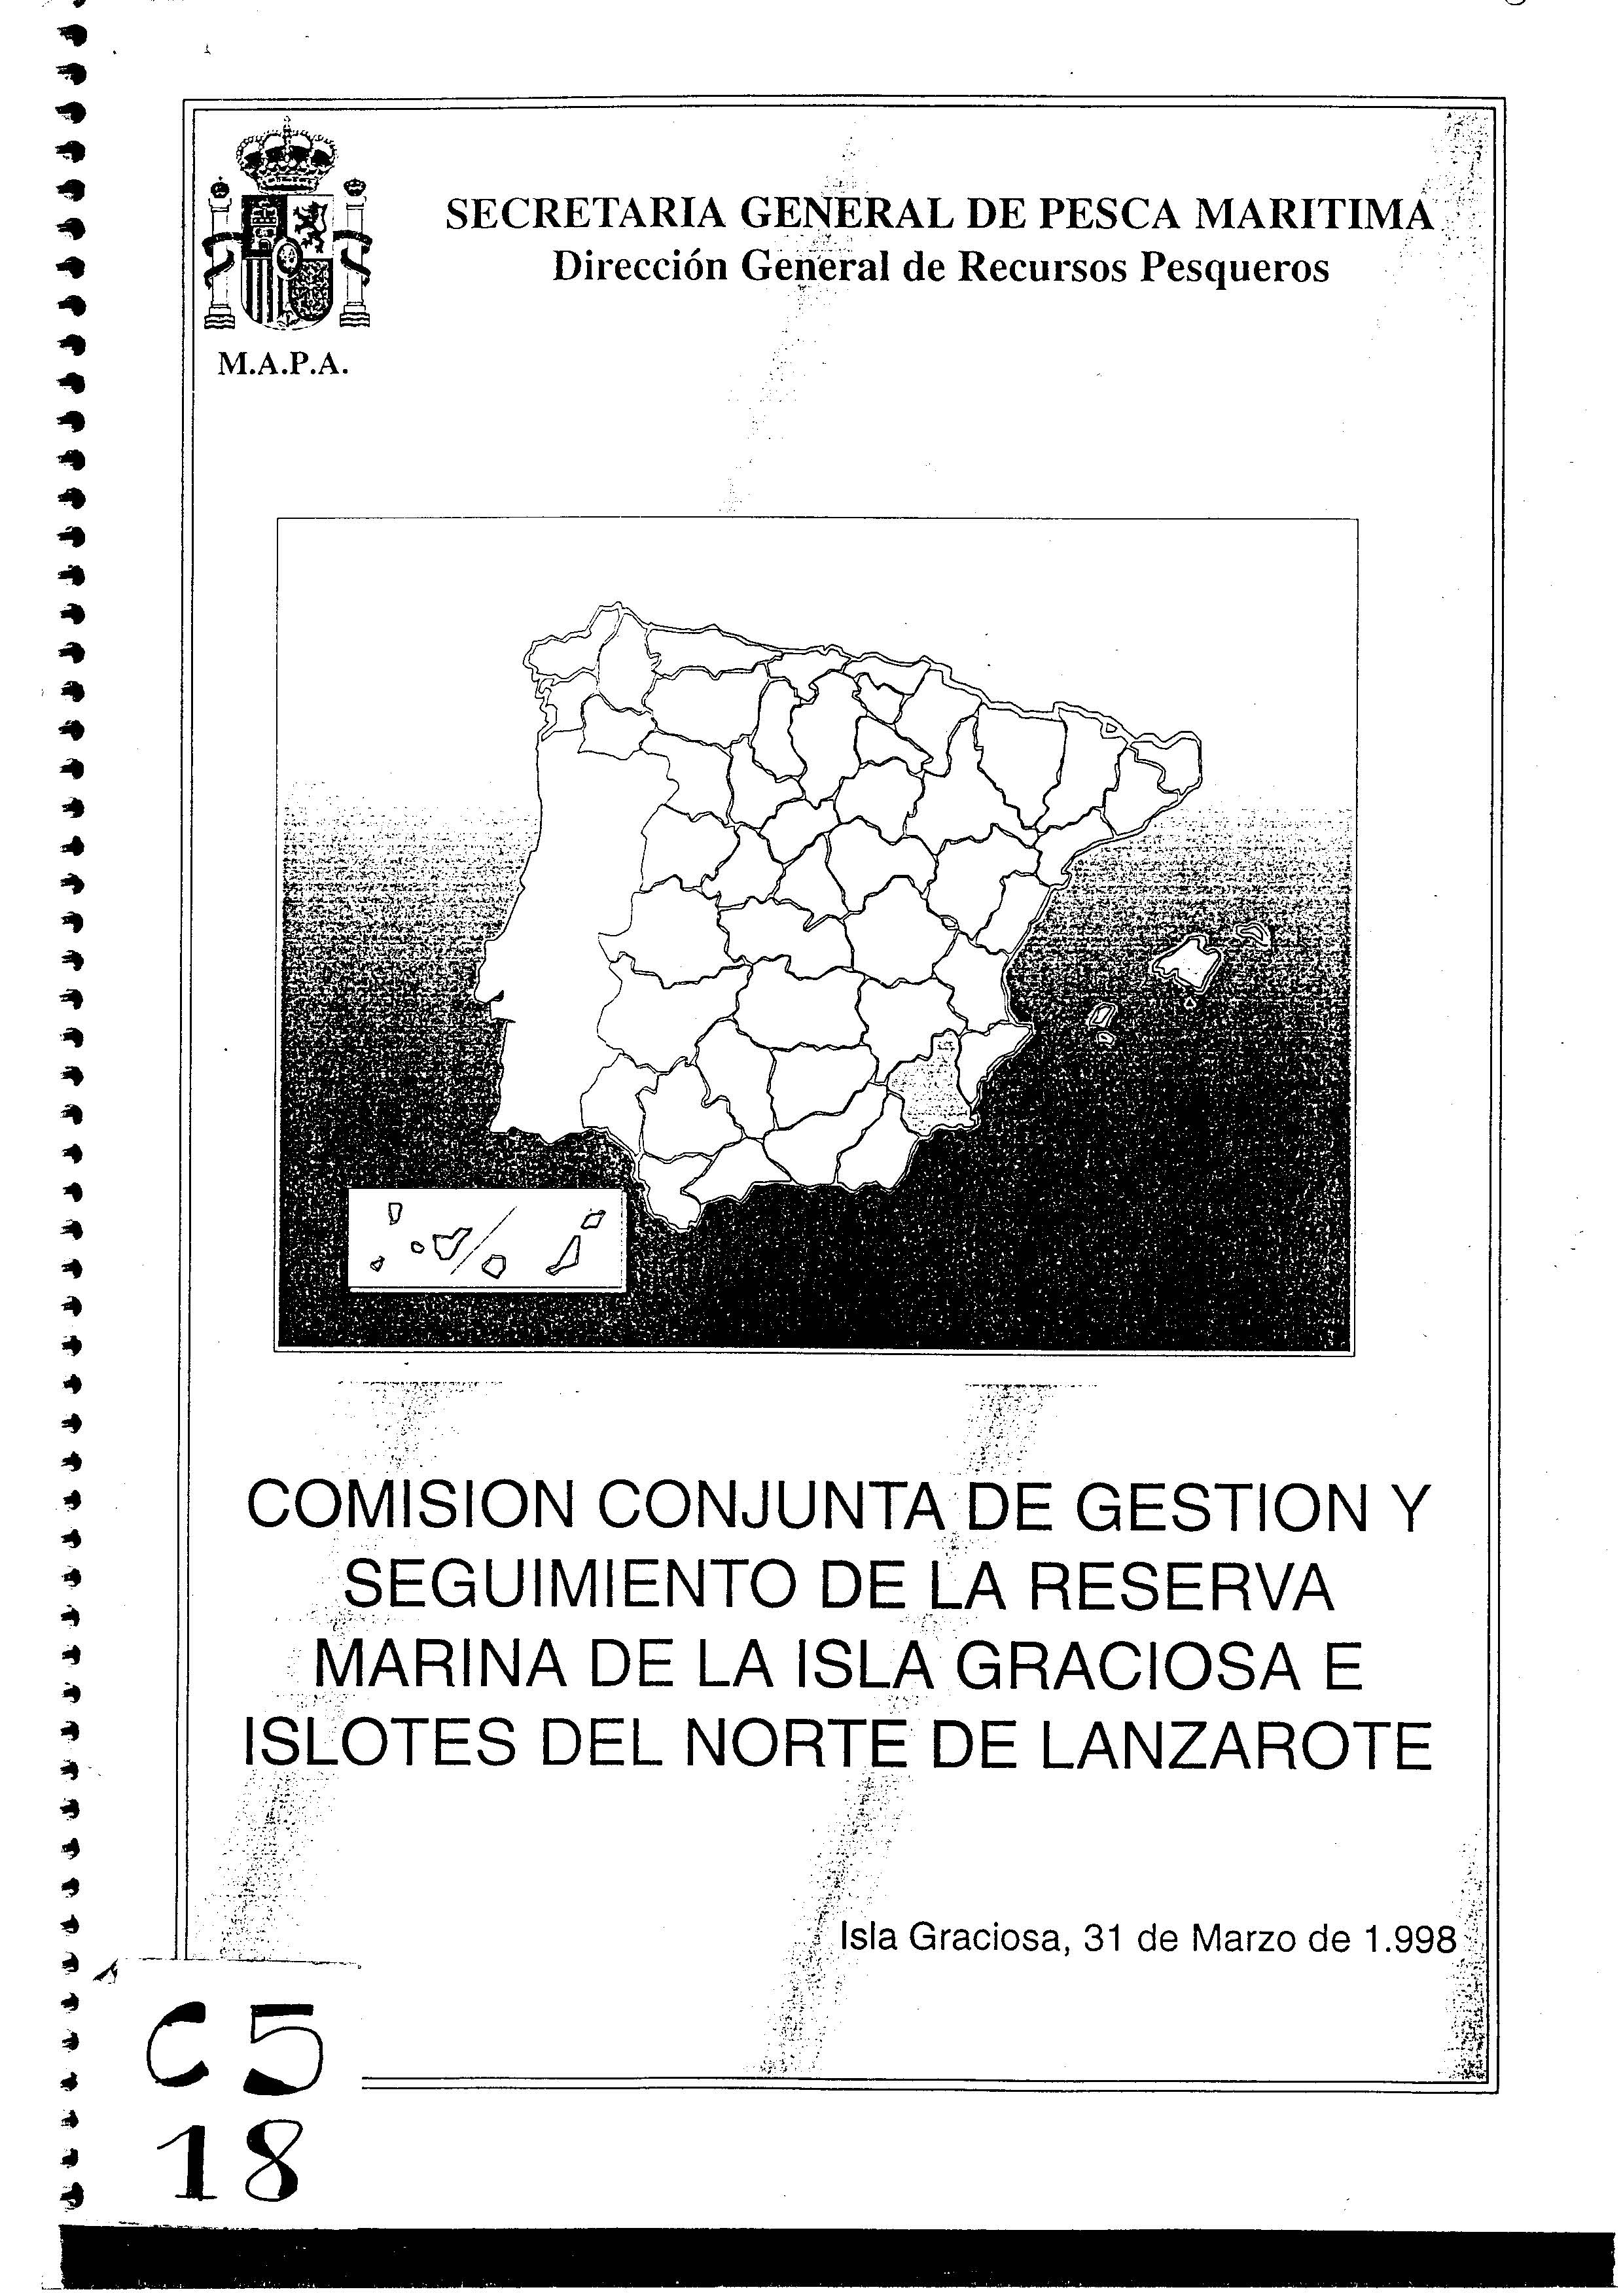 Comisión conjunta de gestión y seguimiento de la Reserva Marina de La Graciosa e islotes del norte de Lanzarote